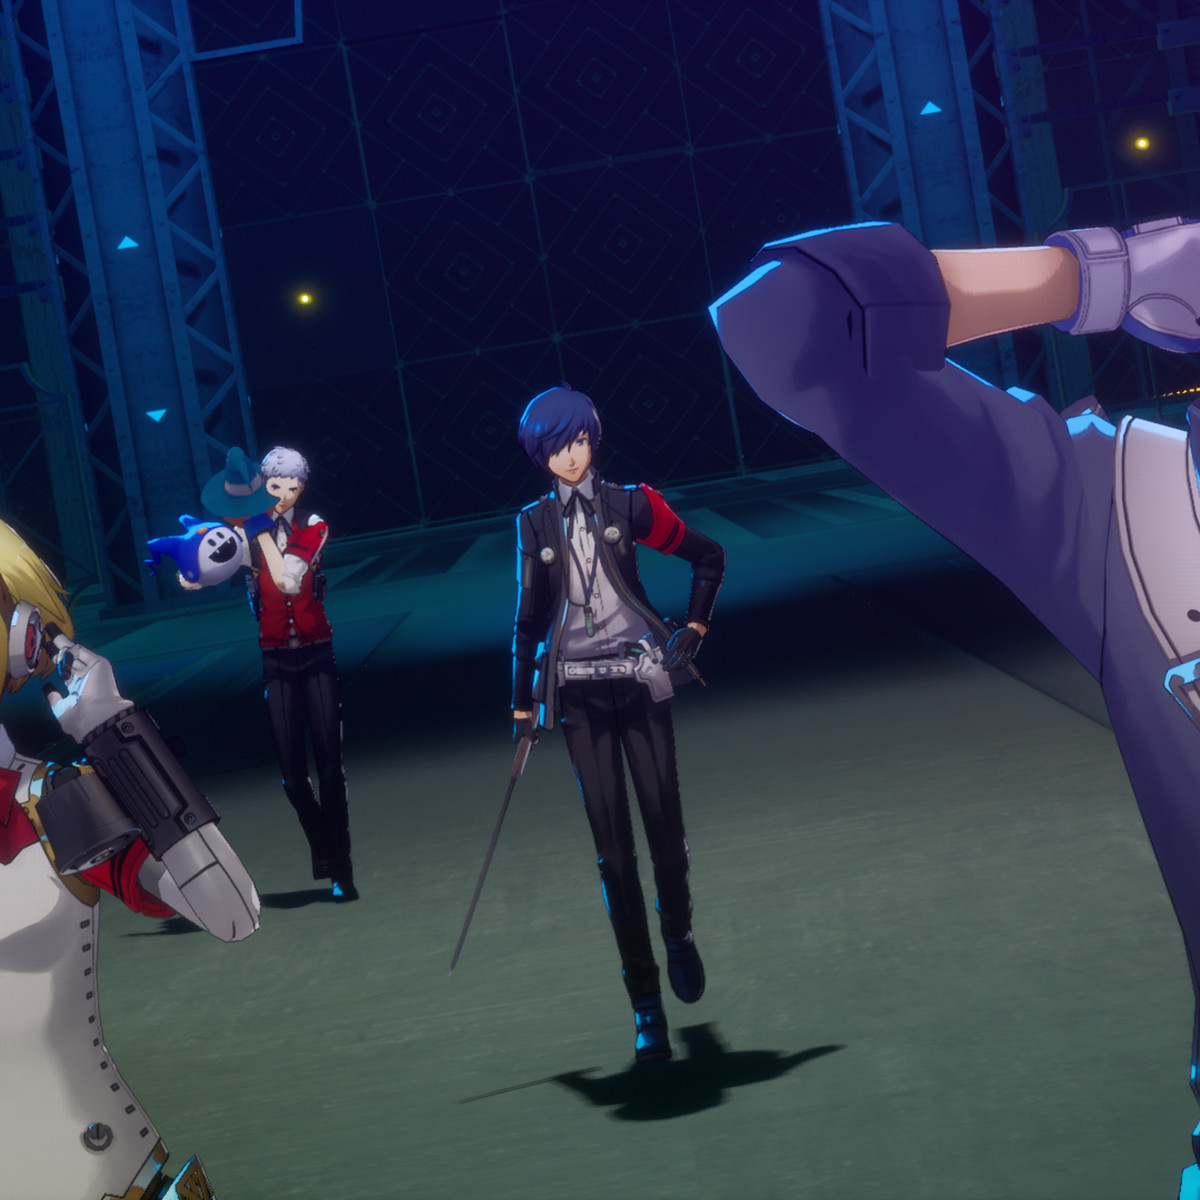 Flera partimedlemmar, inklusive Aigis och Akihiko, går stilfullt mot kameran efter en strid i Persona 3 Reload